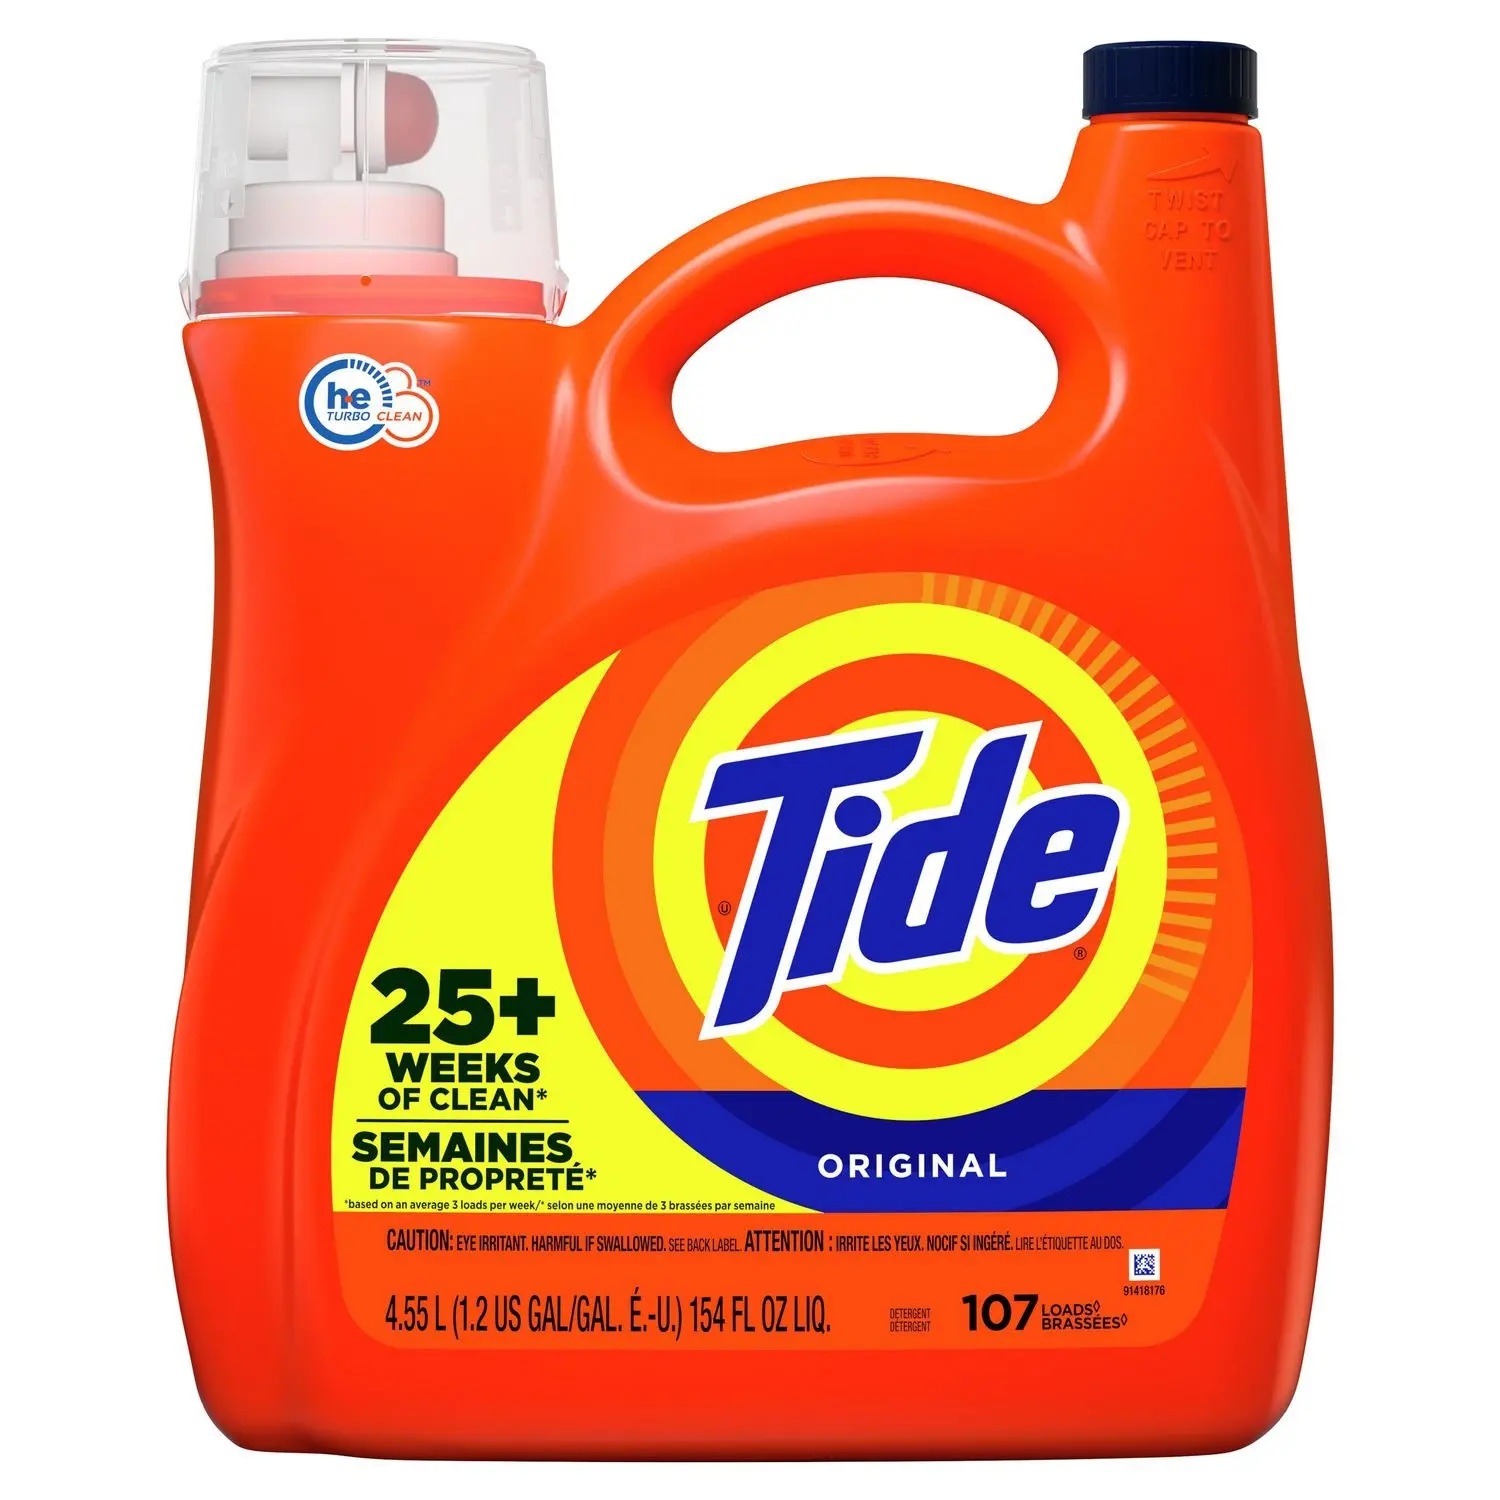 Savon liquide détergent à lessive Tide, haute efficacité (He), parfum original, 64 charges